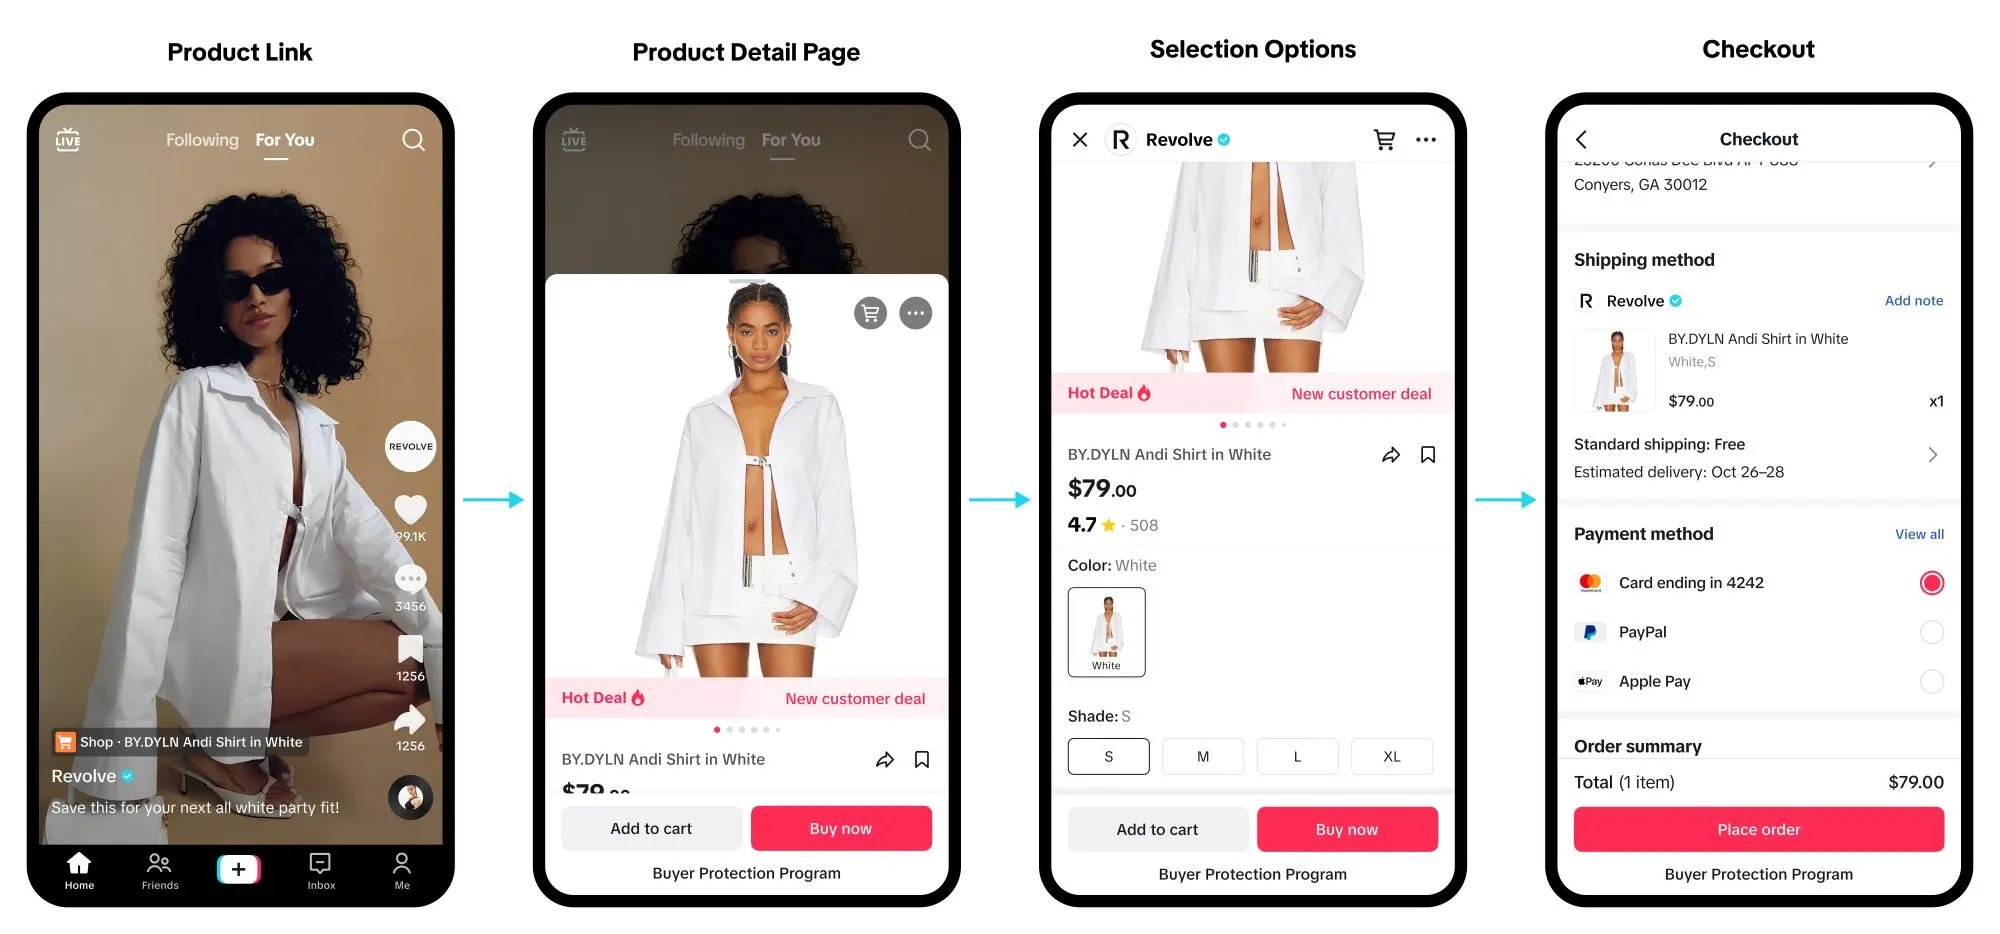 Bild des TikTok-Shops inklusive Produktlink, Produktdetailseite, Auswahloptionen, Checkout